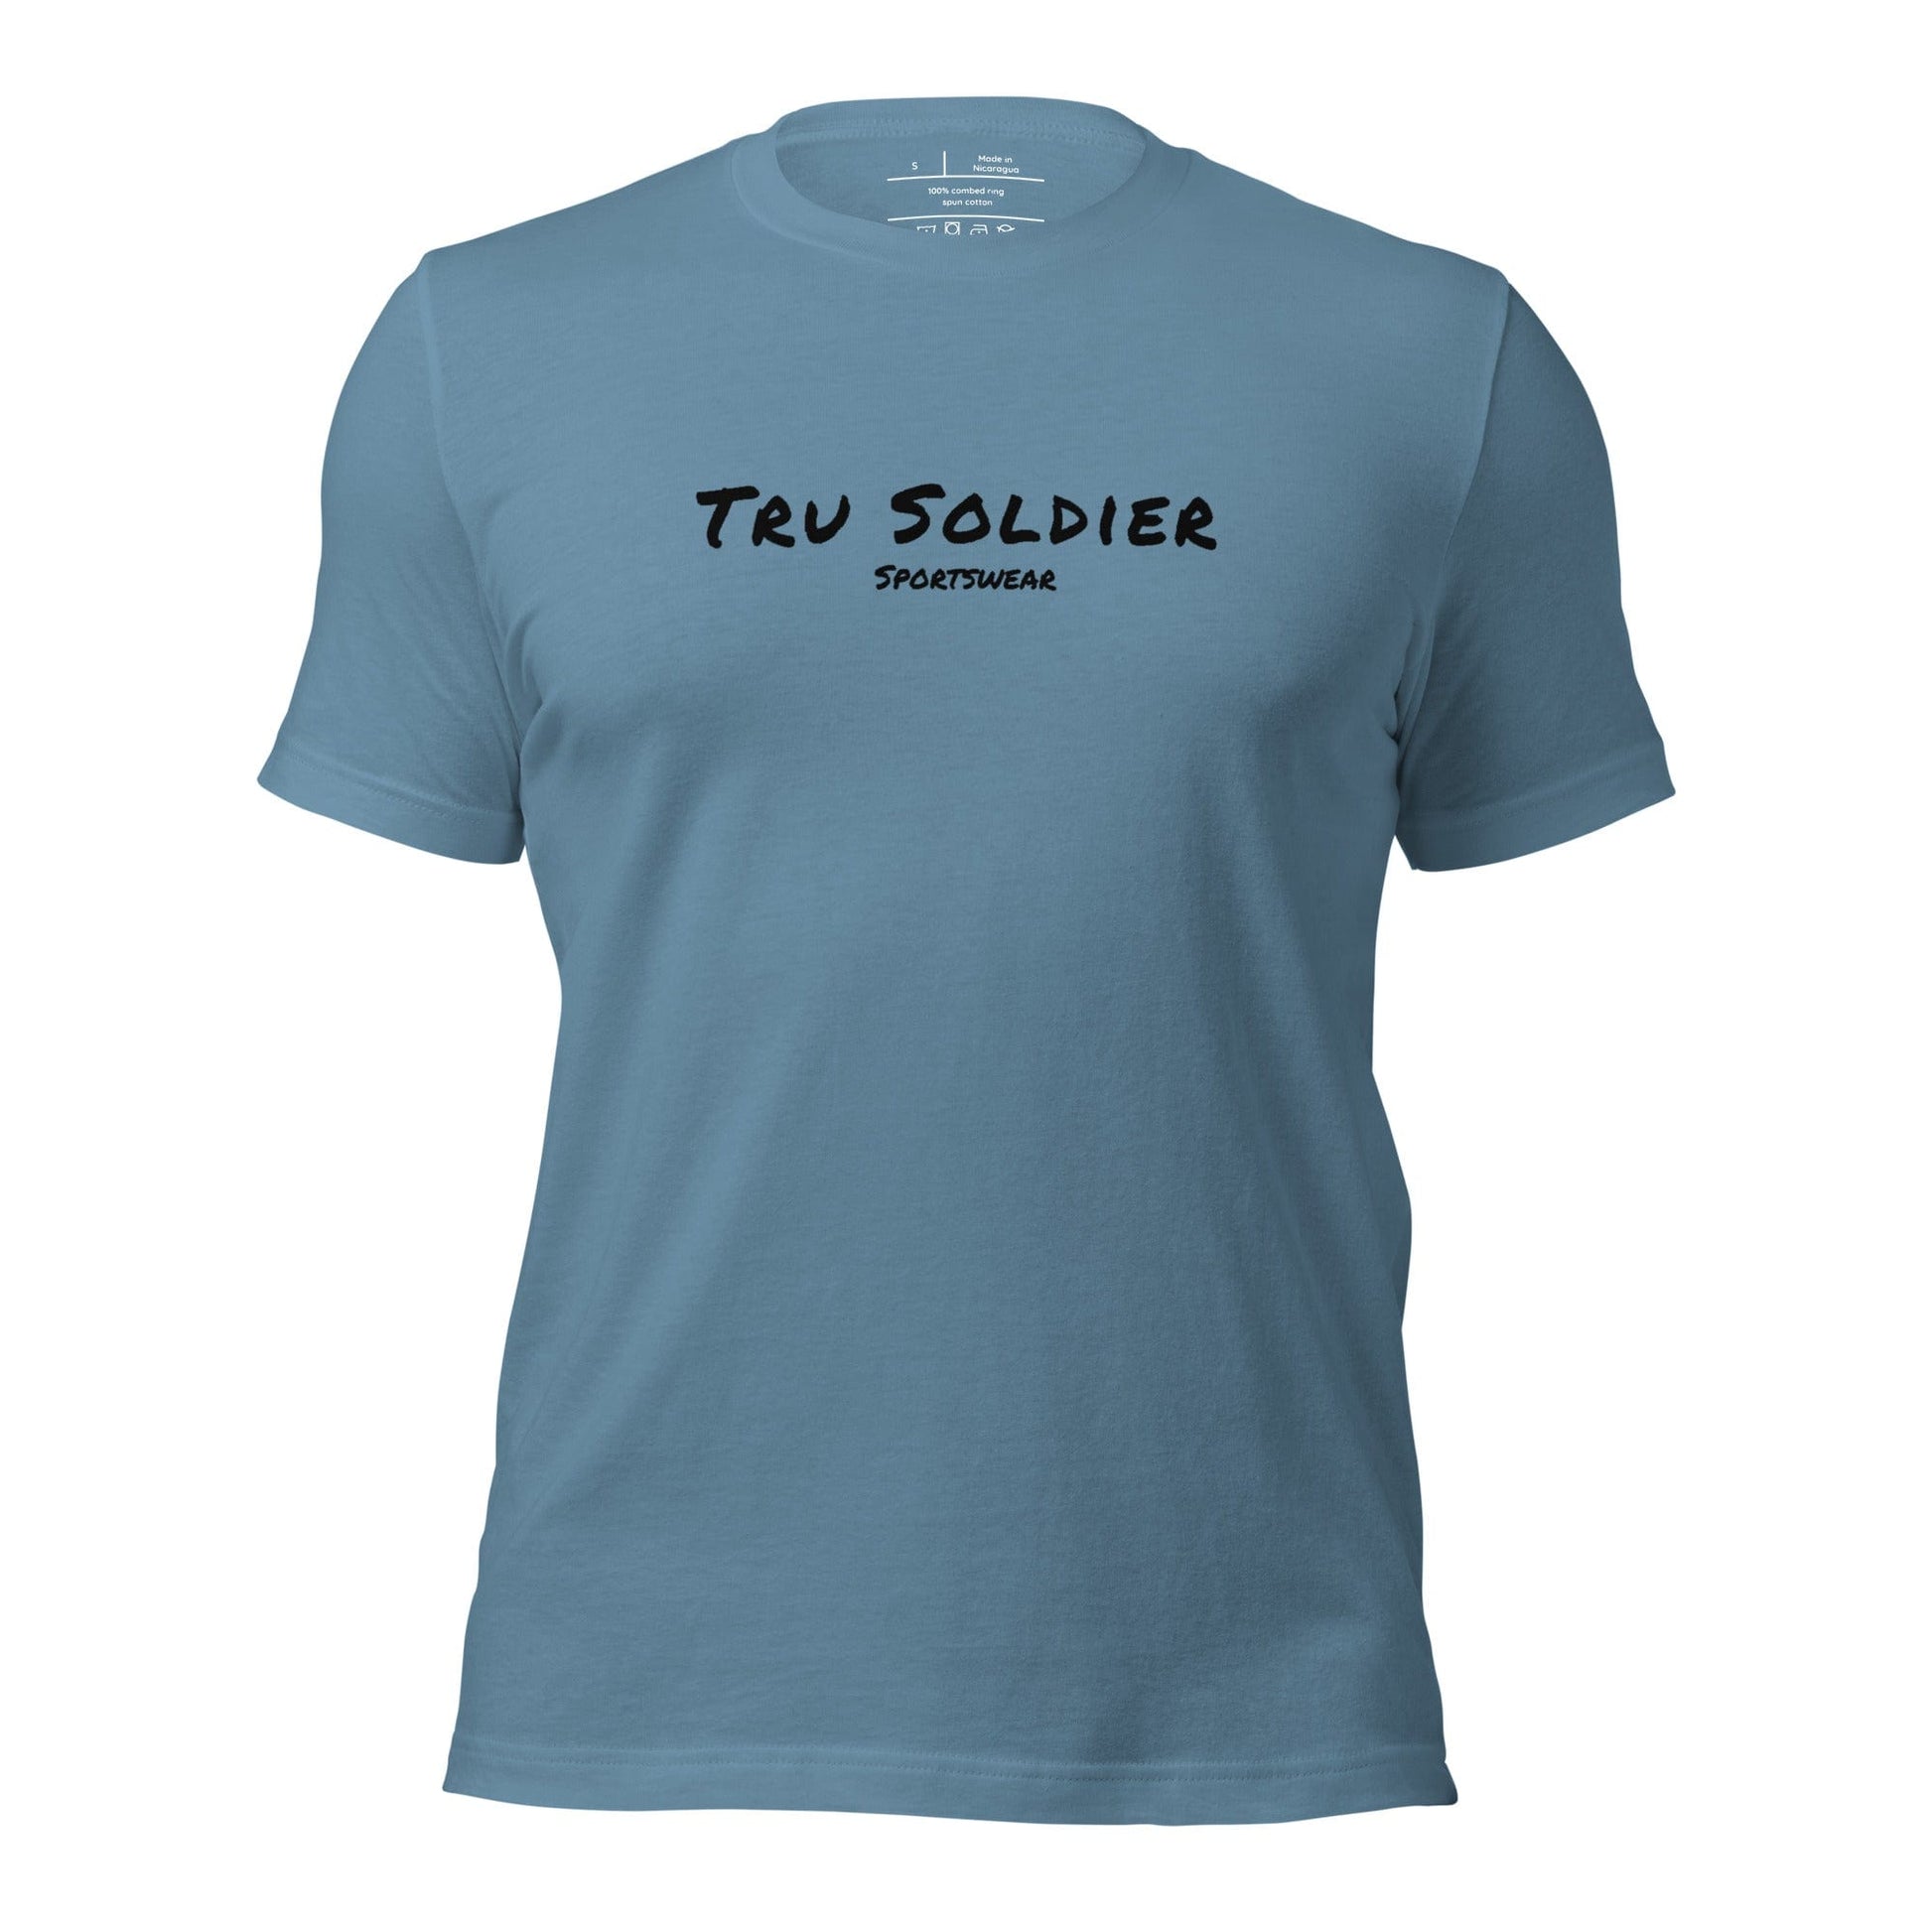 Tru Soldier Sportswear  Steel Blue / S Unisex t-shirt